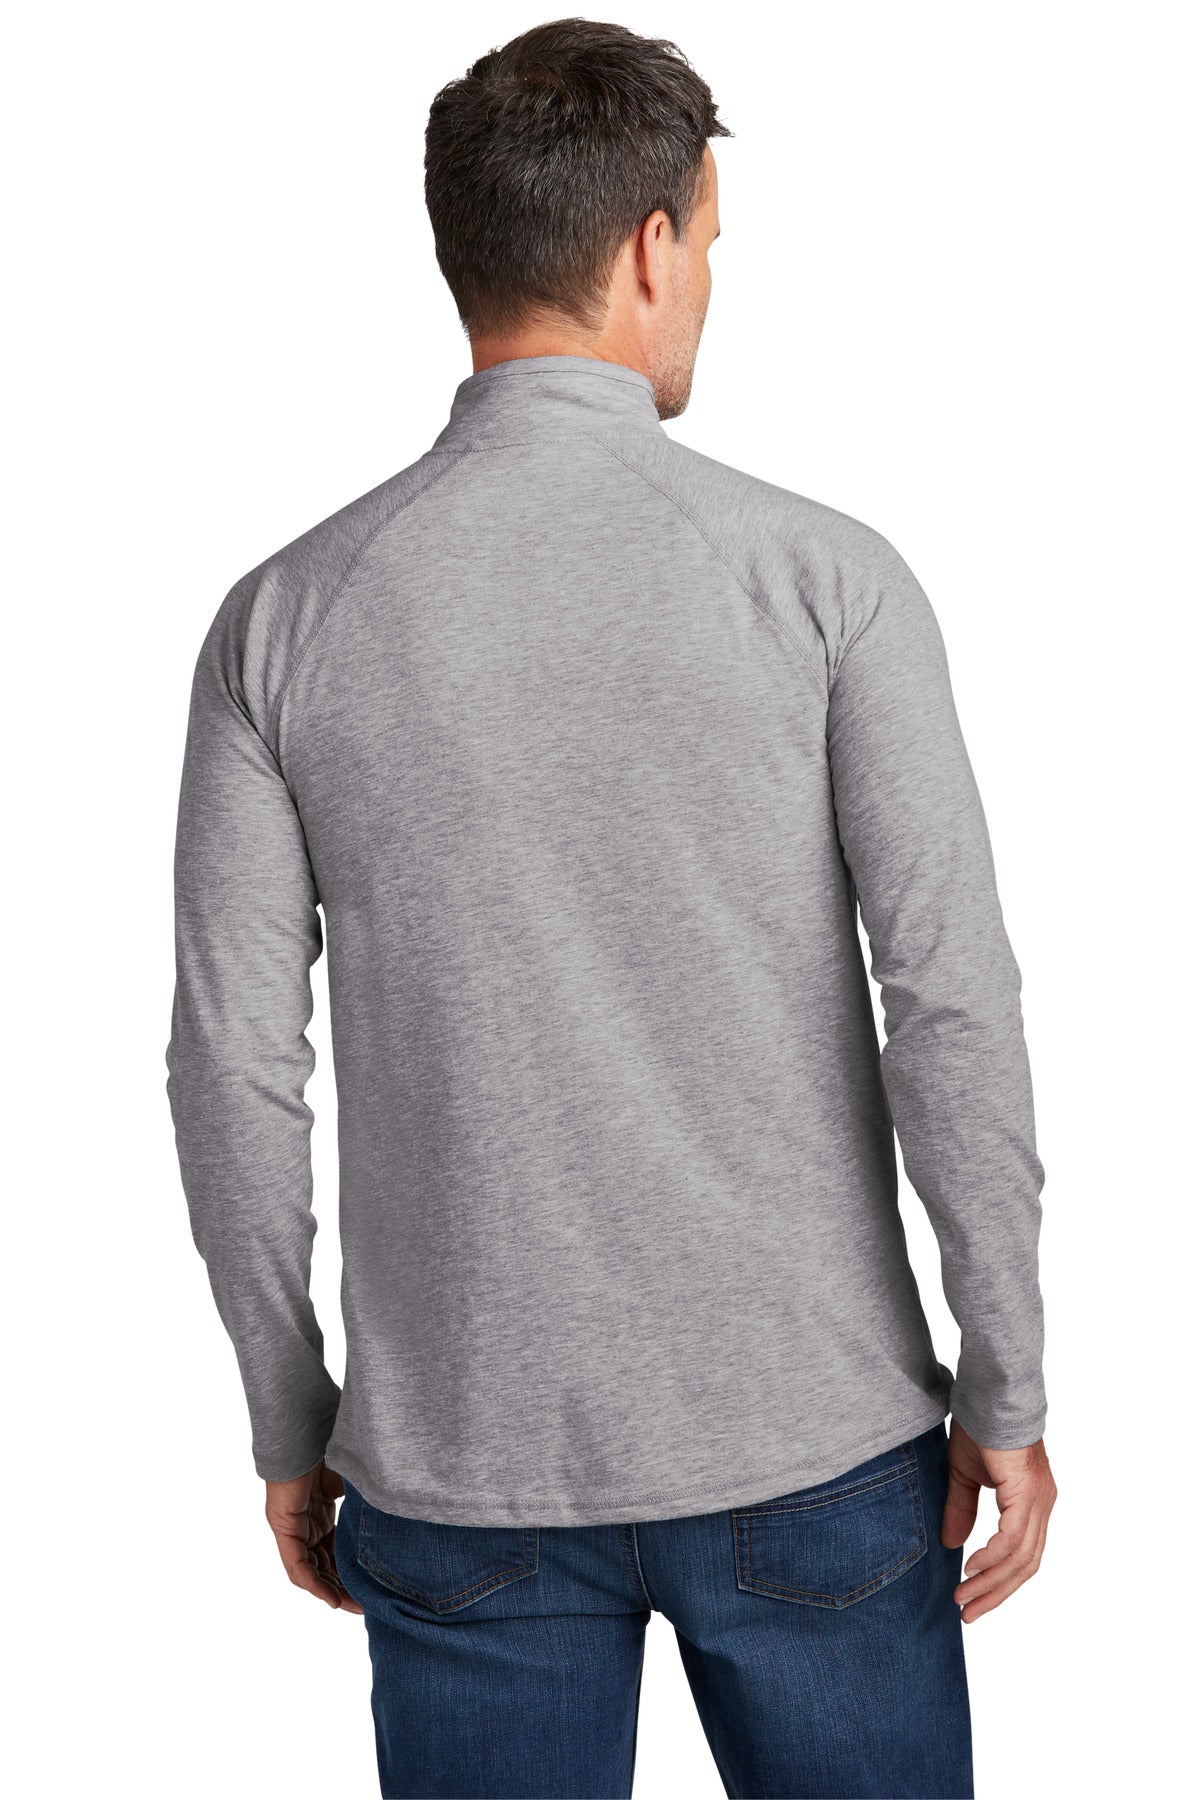 Carhartt Force 1/4-Zip Long Sleeve T-Shirt CT104255